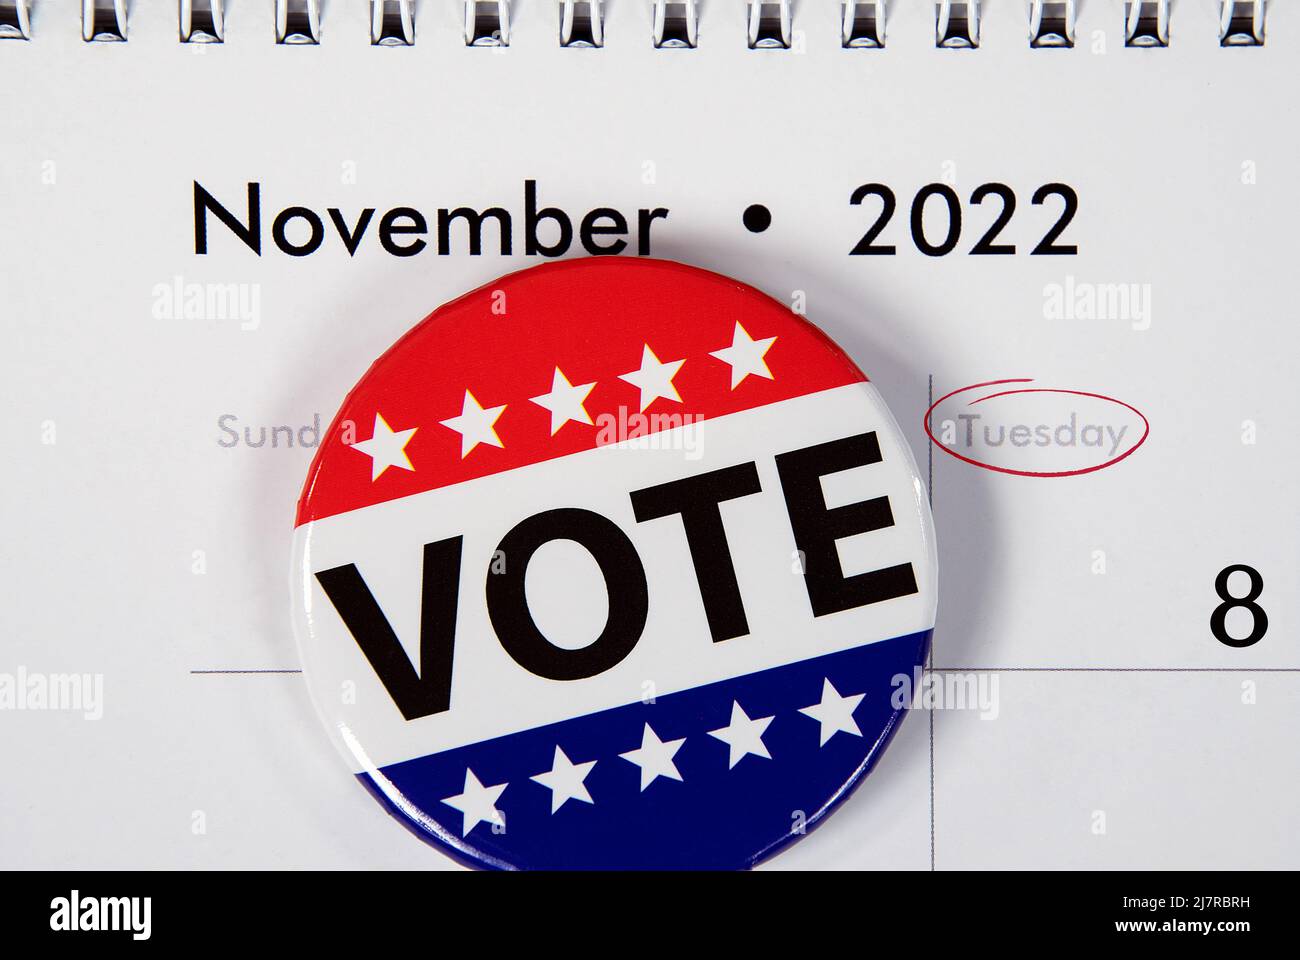 Drapeau vote PIN le 2022 novembre date civile pour l'élection de mi-mandat Banque D'Images